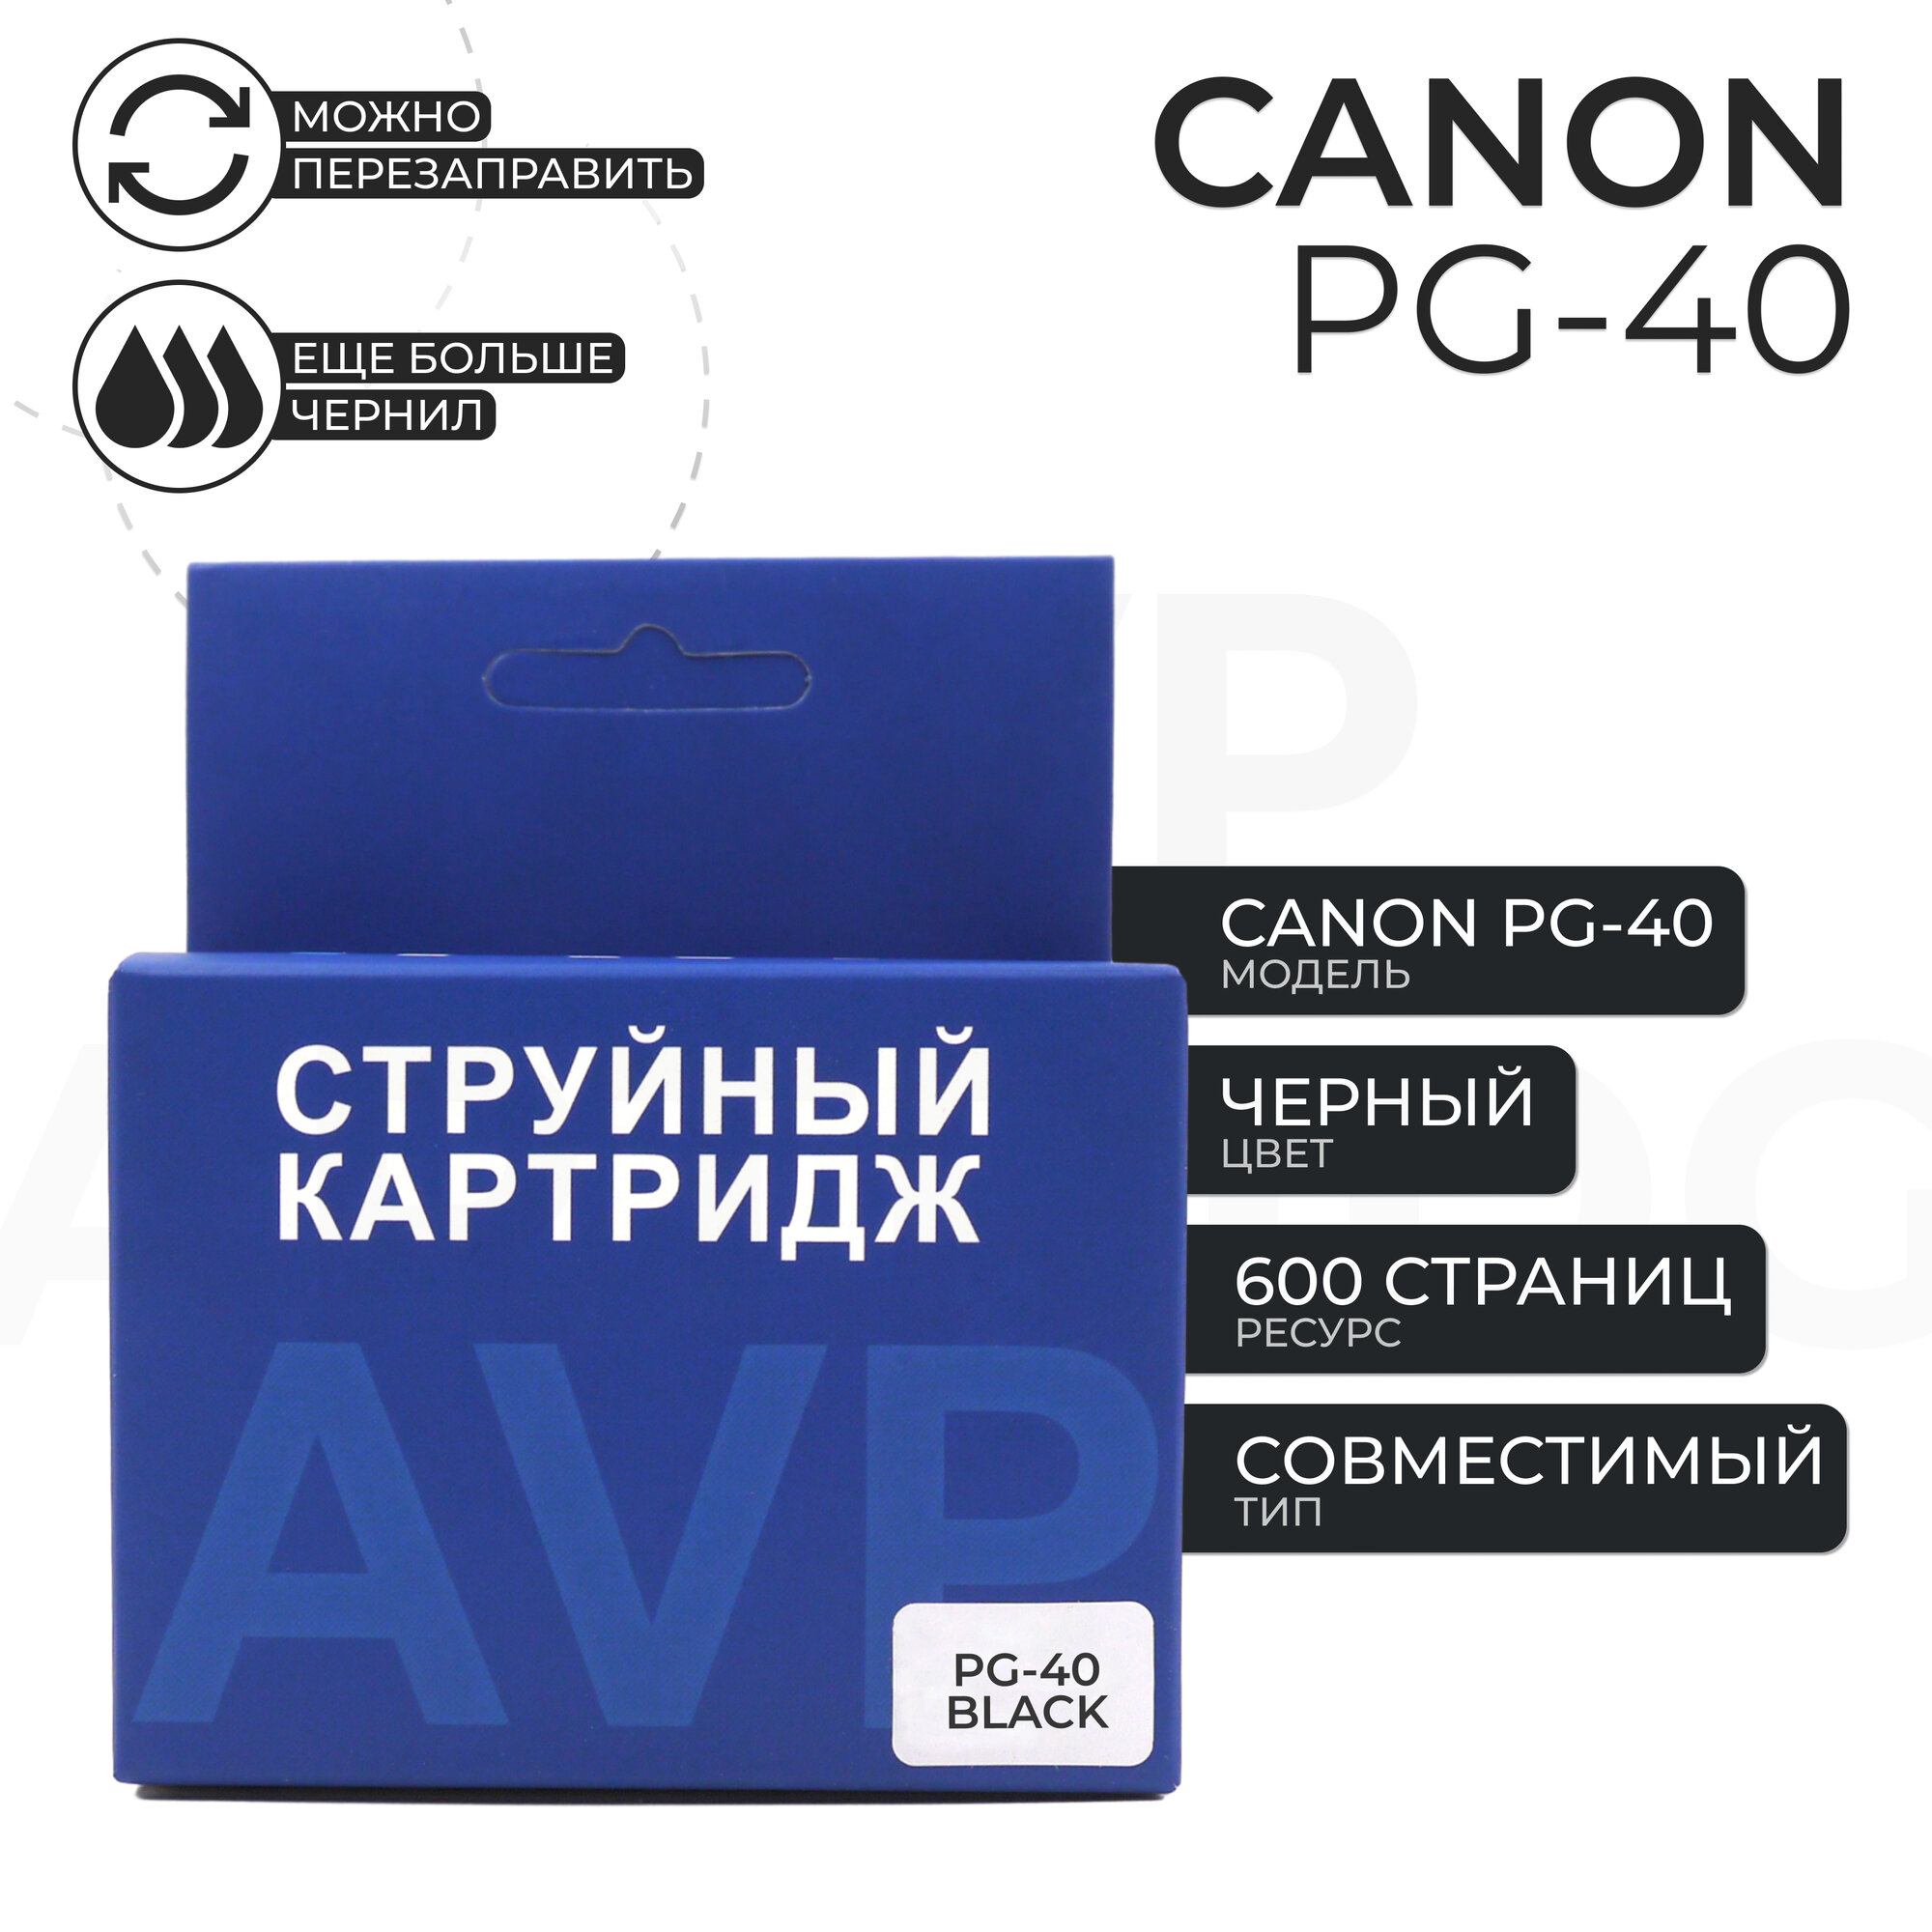 Картридж AVP PG-40 для принтера Canon, черный